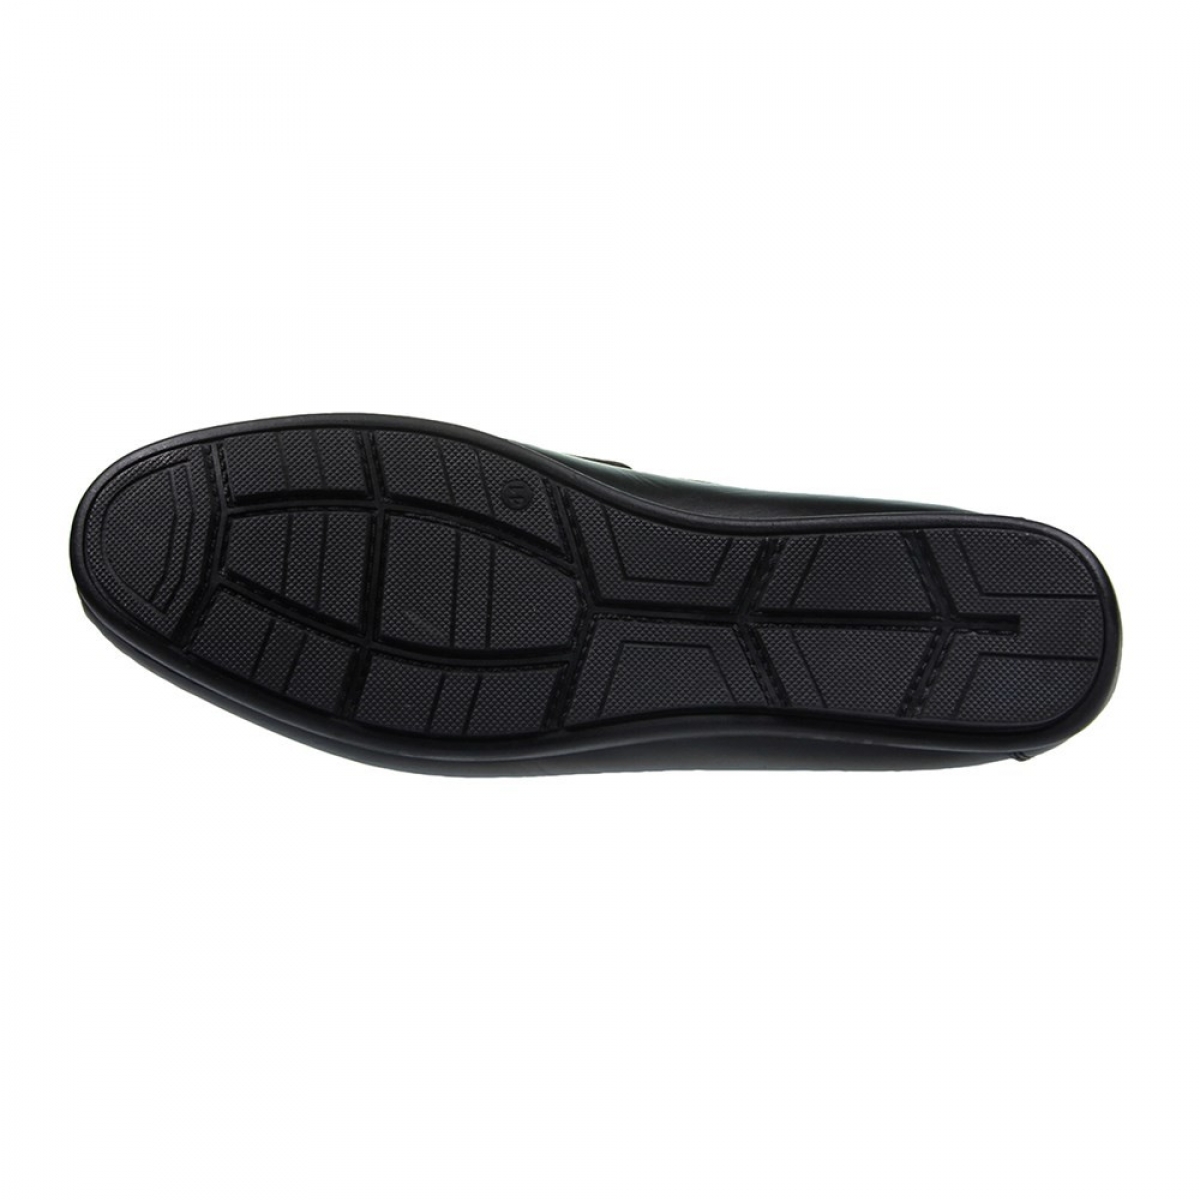 Flo Erkek Deri Siyah Casual Ayakkabı 211-4261MR 100. 4